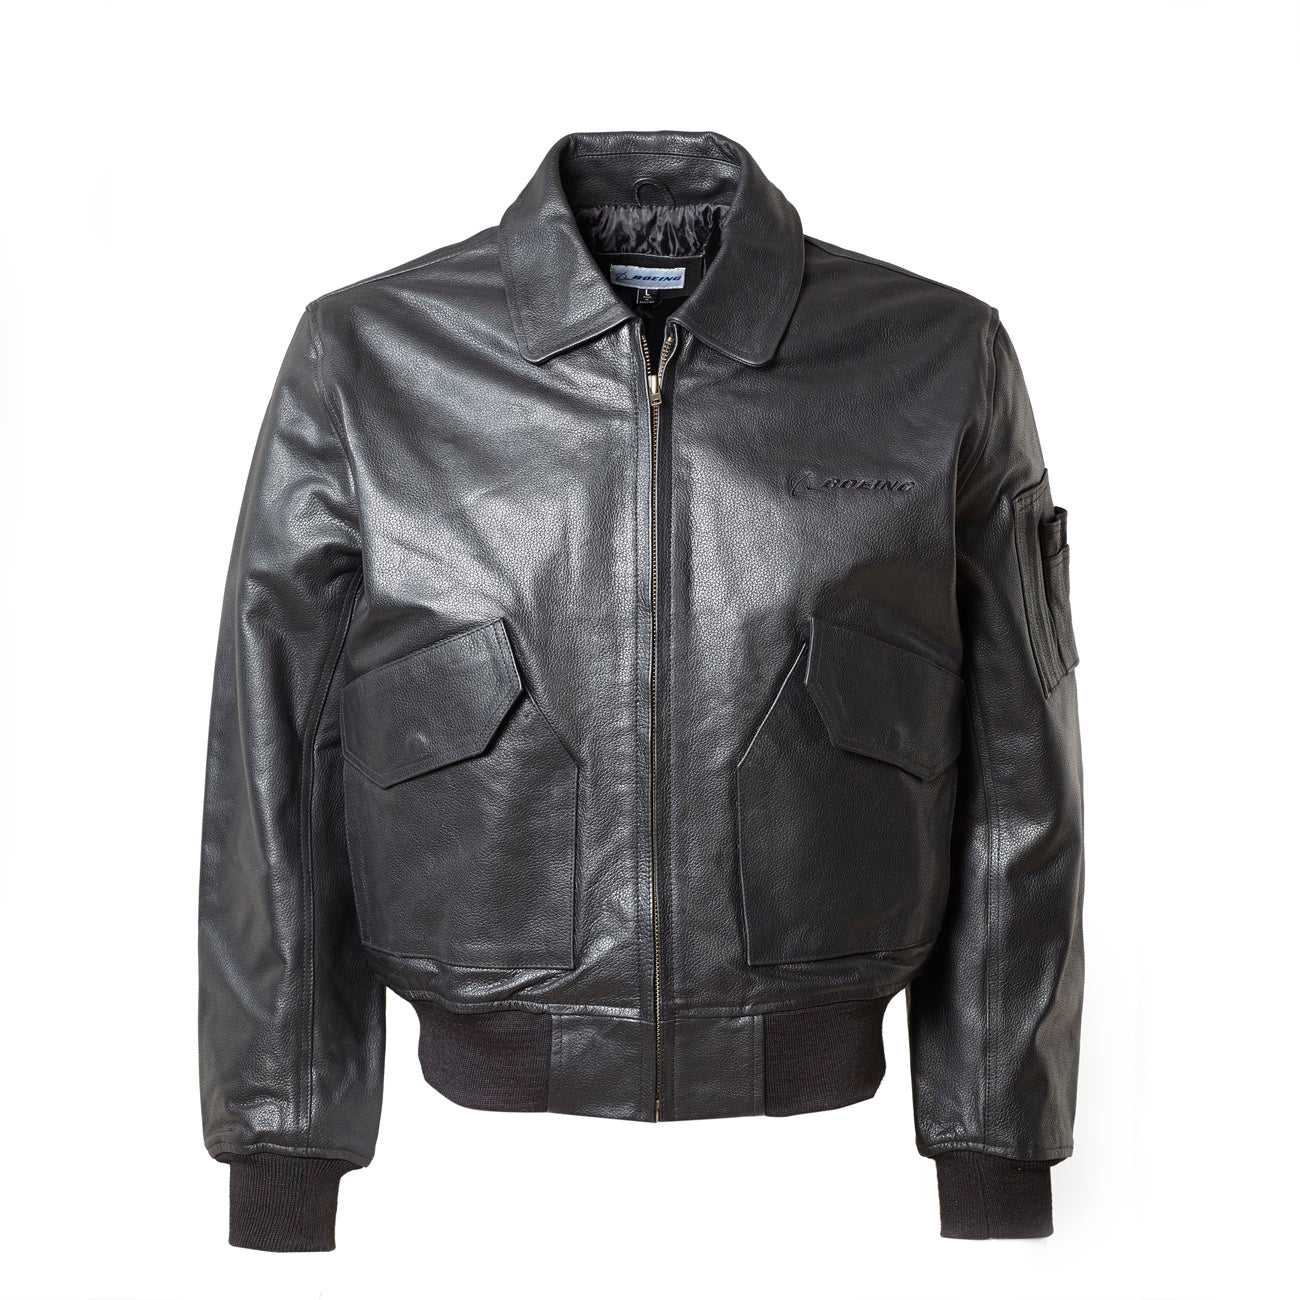 Argen New Zeland Leather Jacket